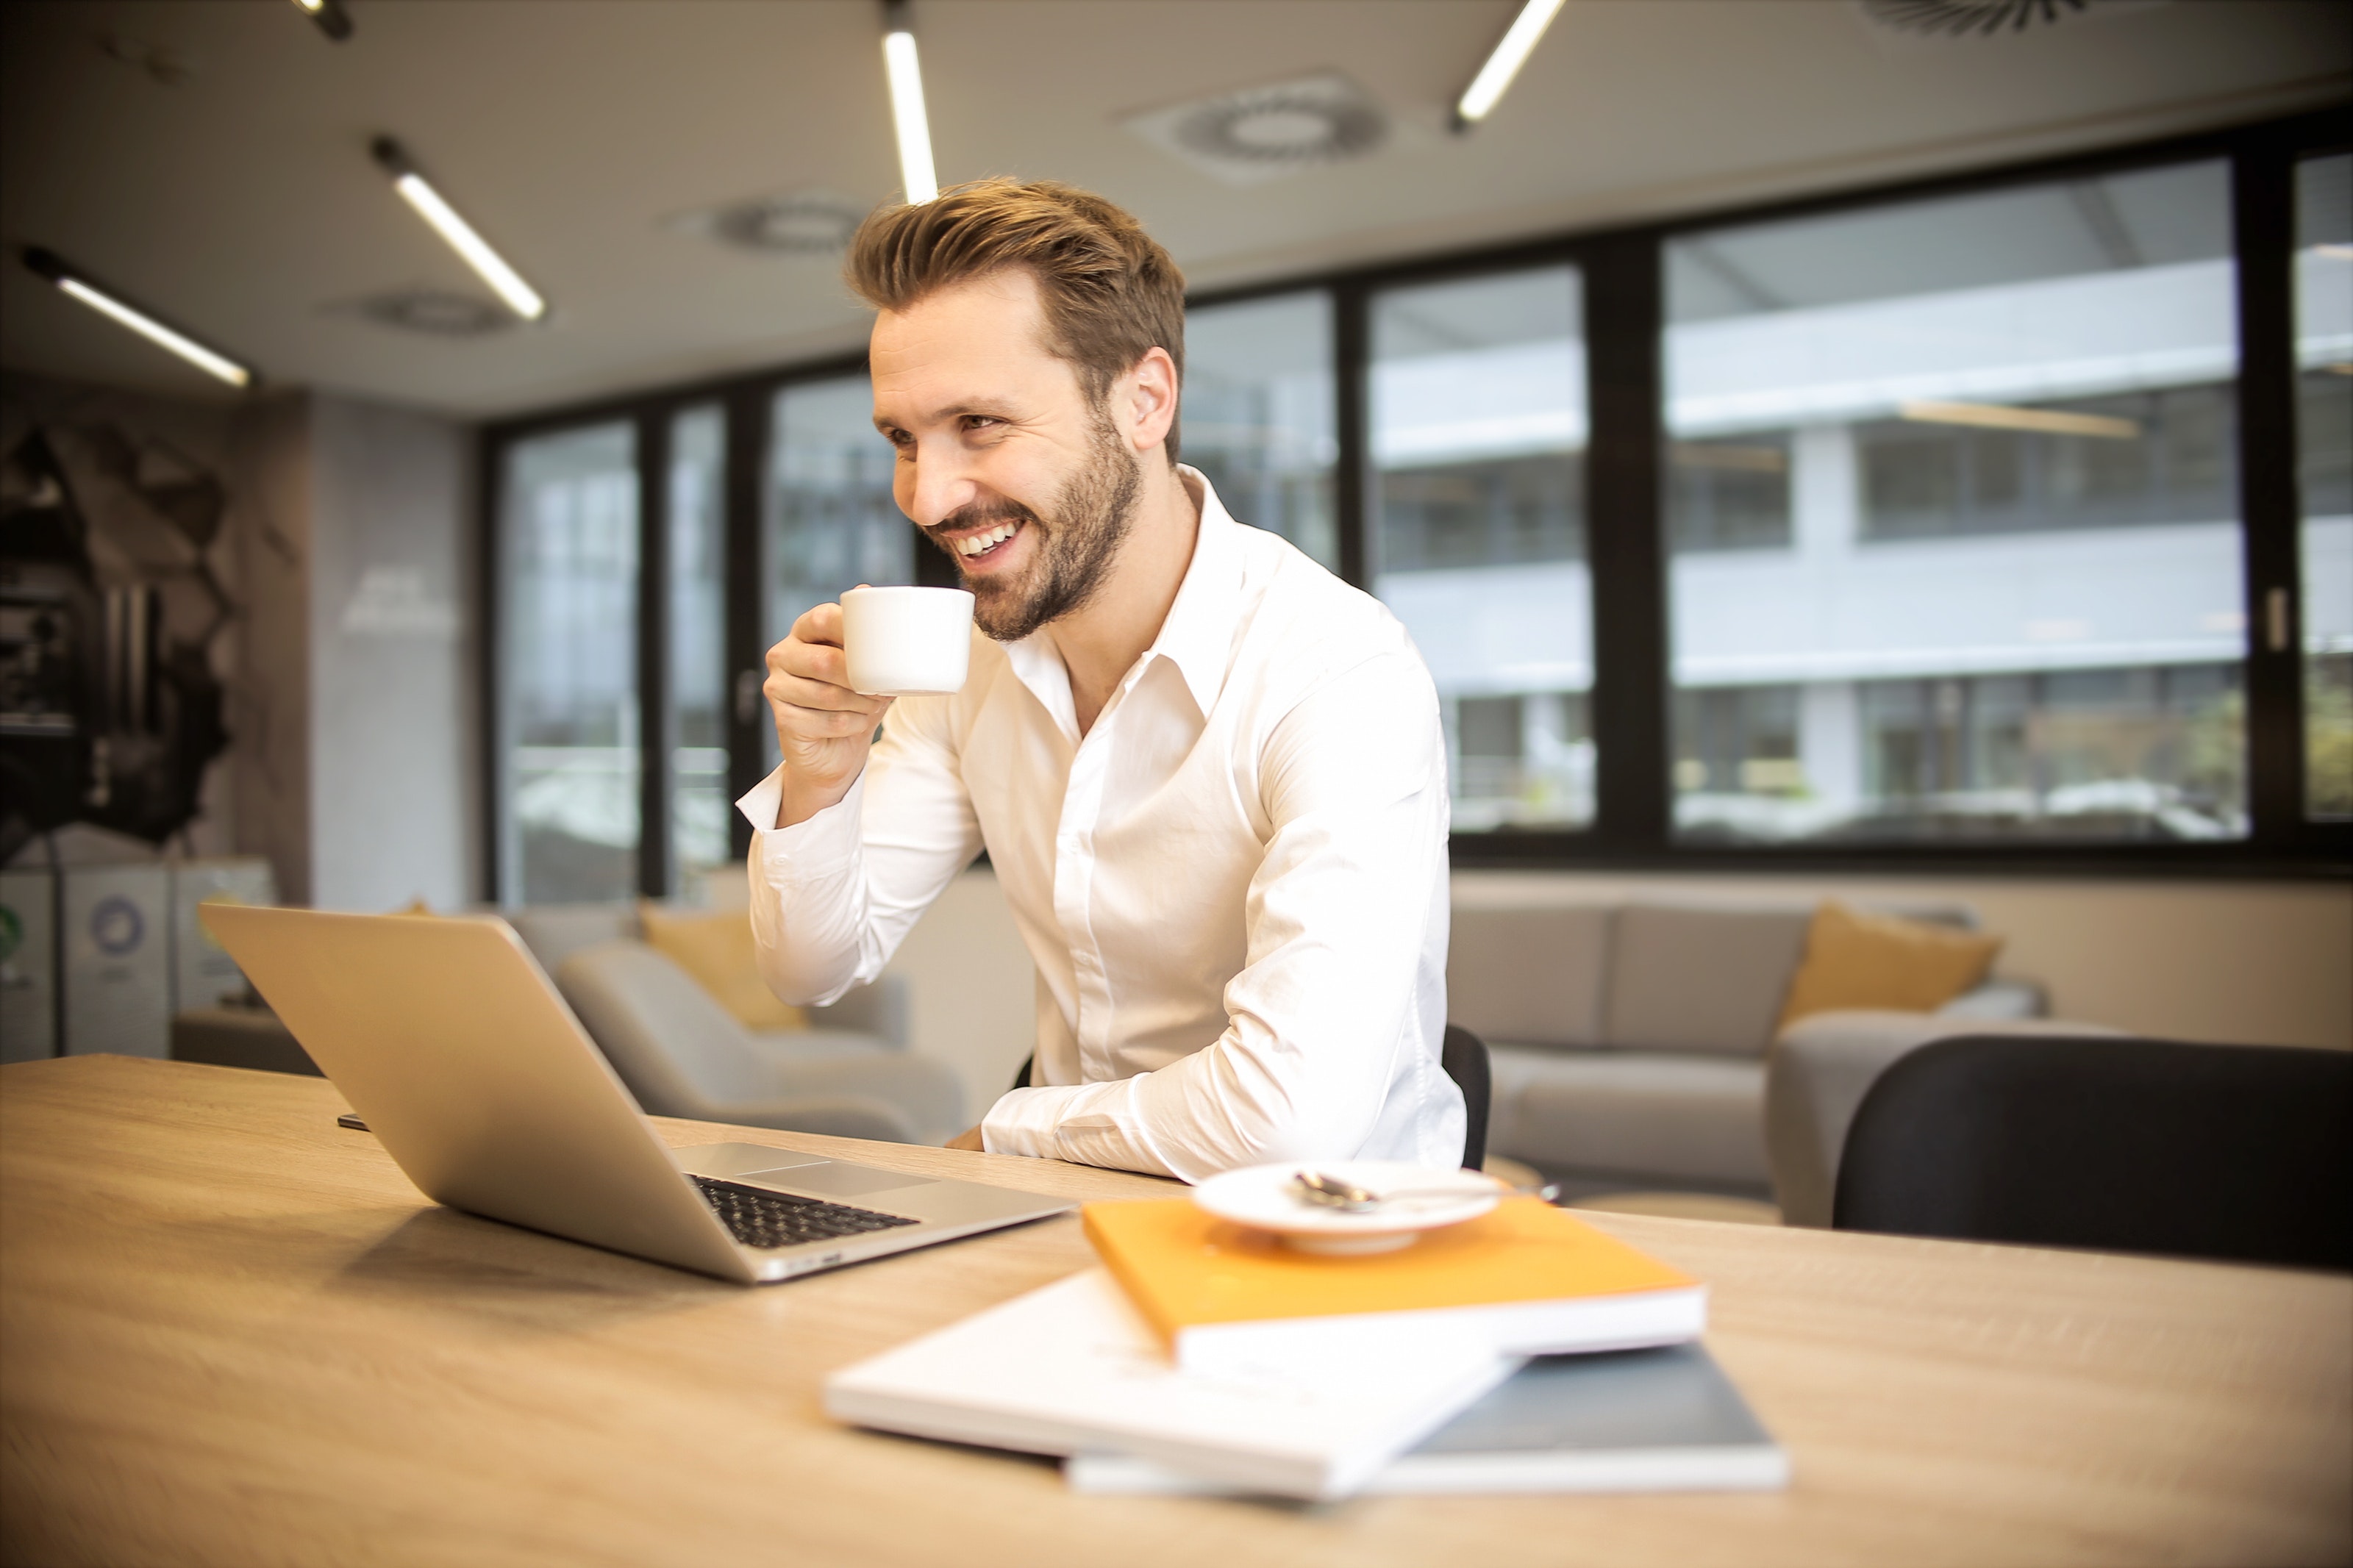 Smiling man enjoying coffee while working on a laptop, embodying job satisfaction